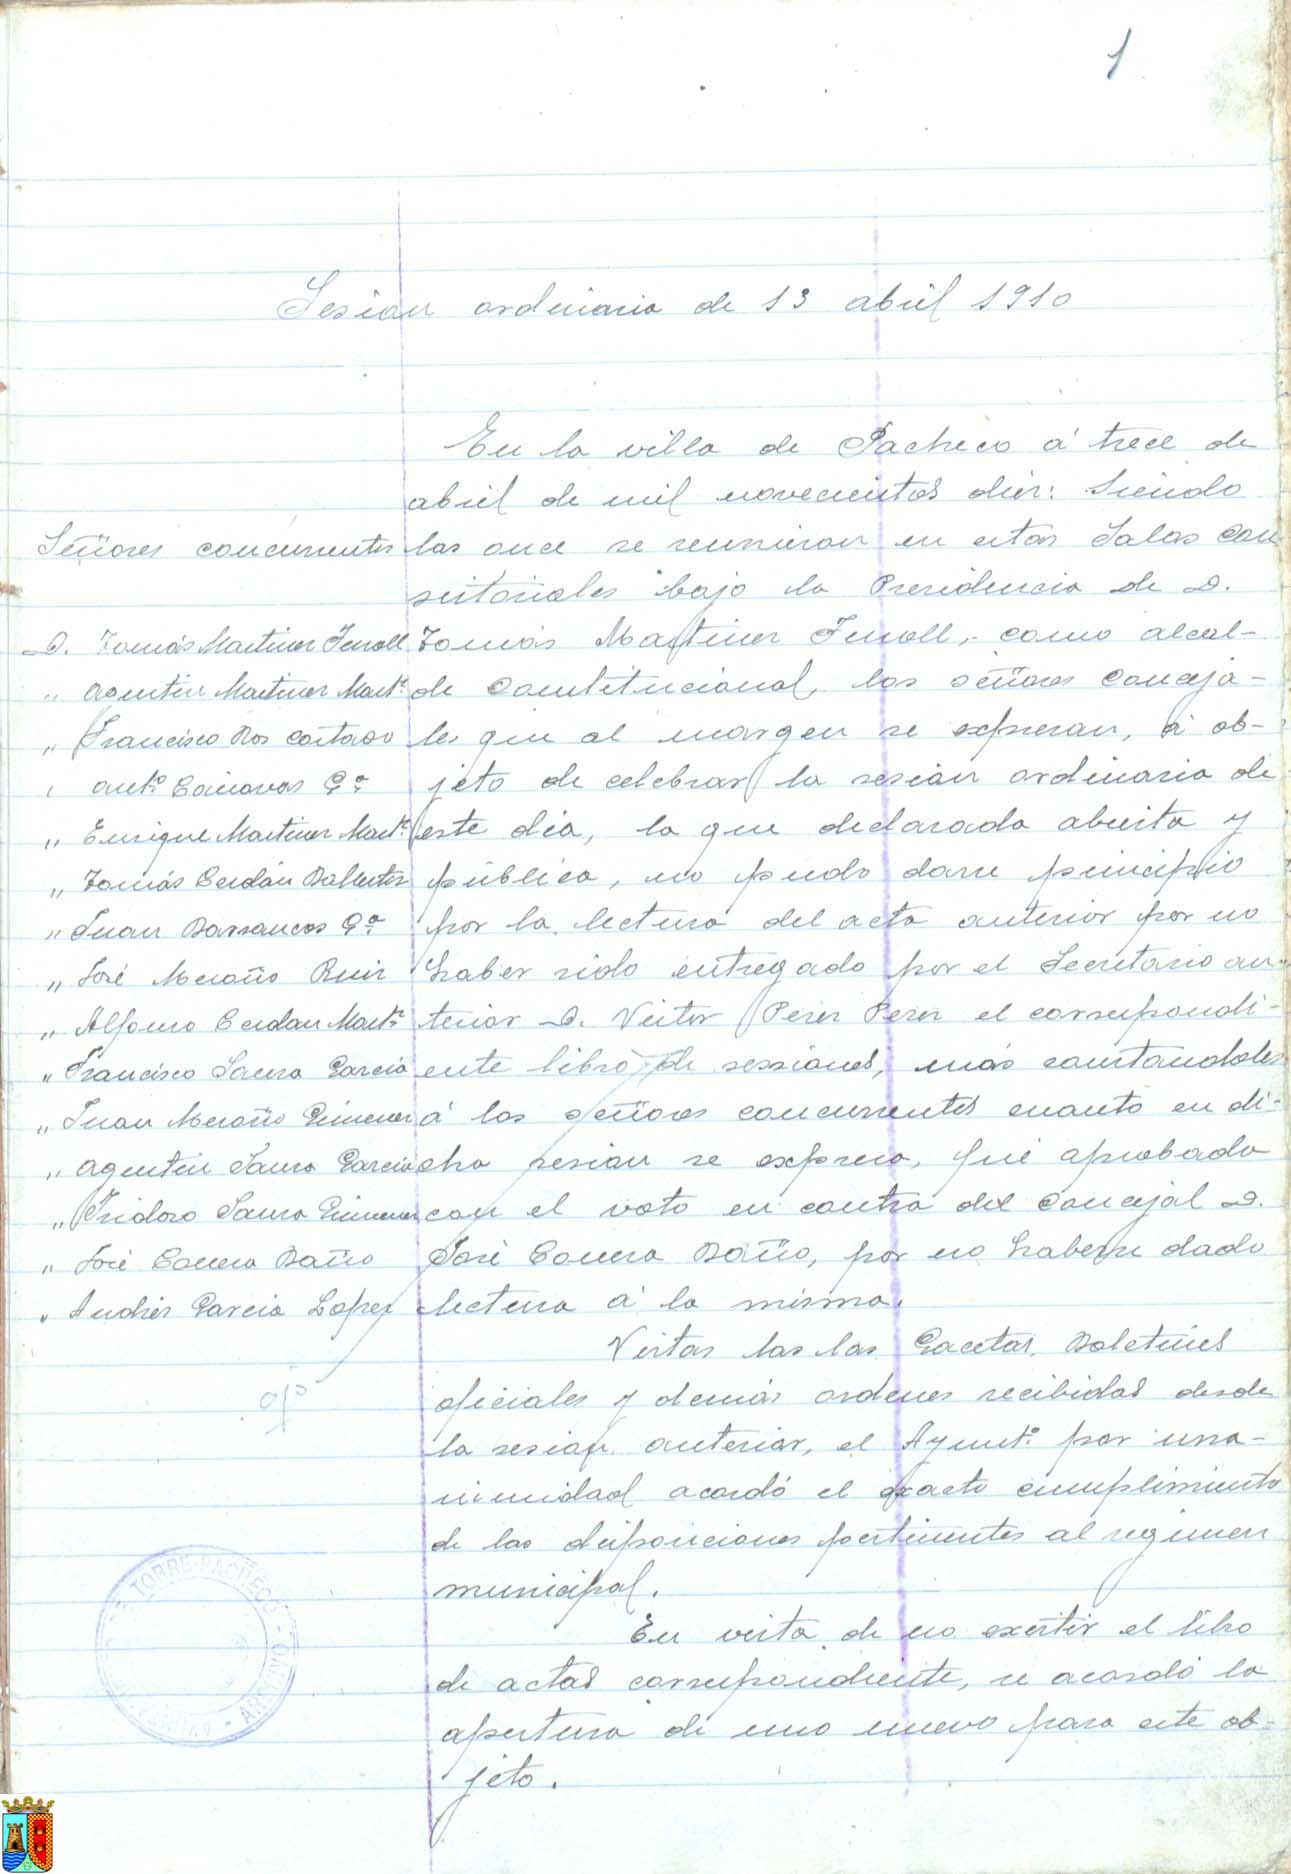 Actas de sesiones del pleno del Ayuntamiento de Torre Pacheco. Año 1910